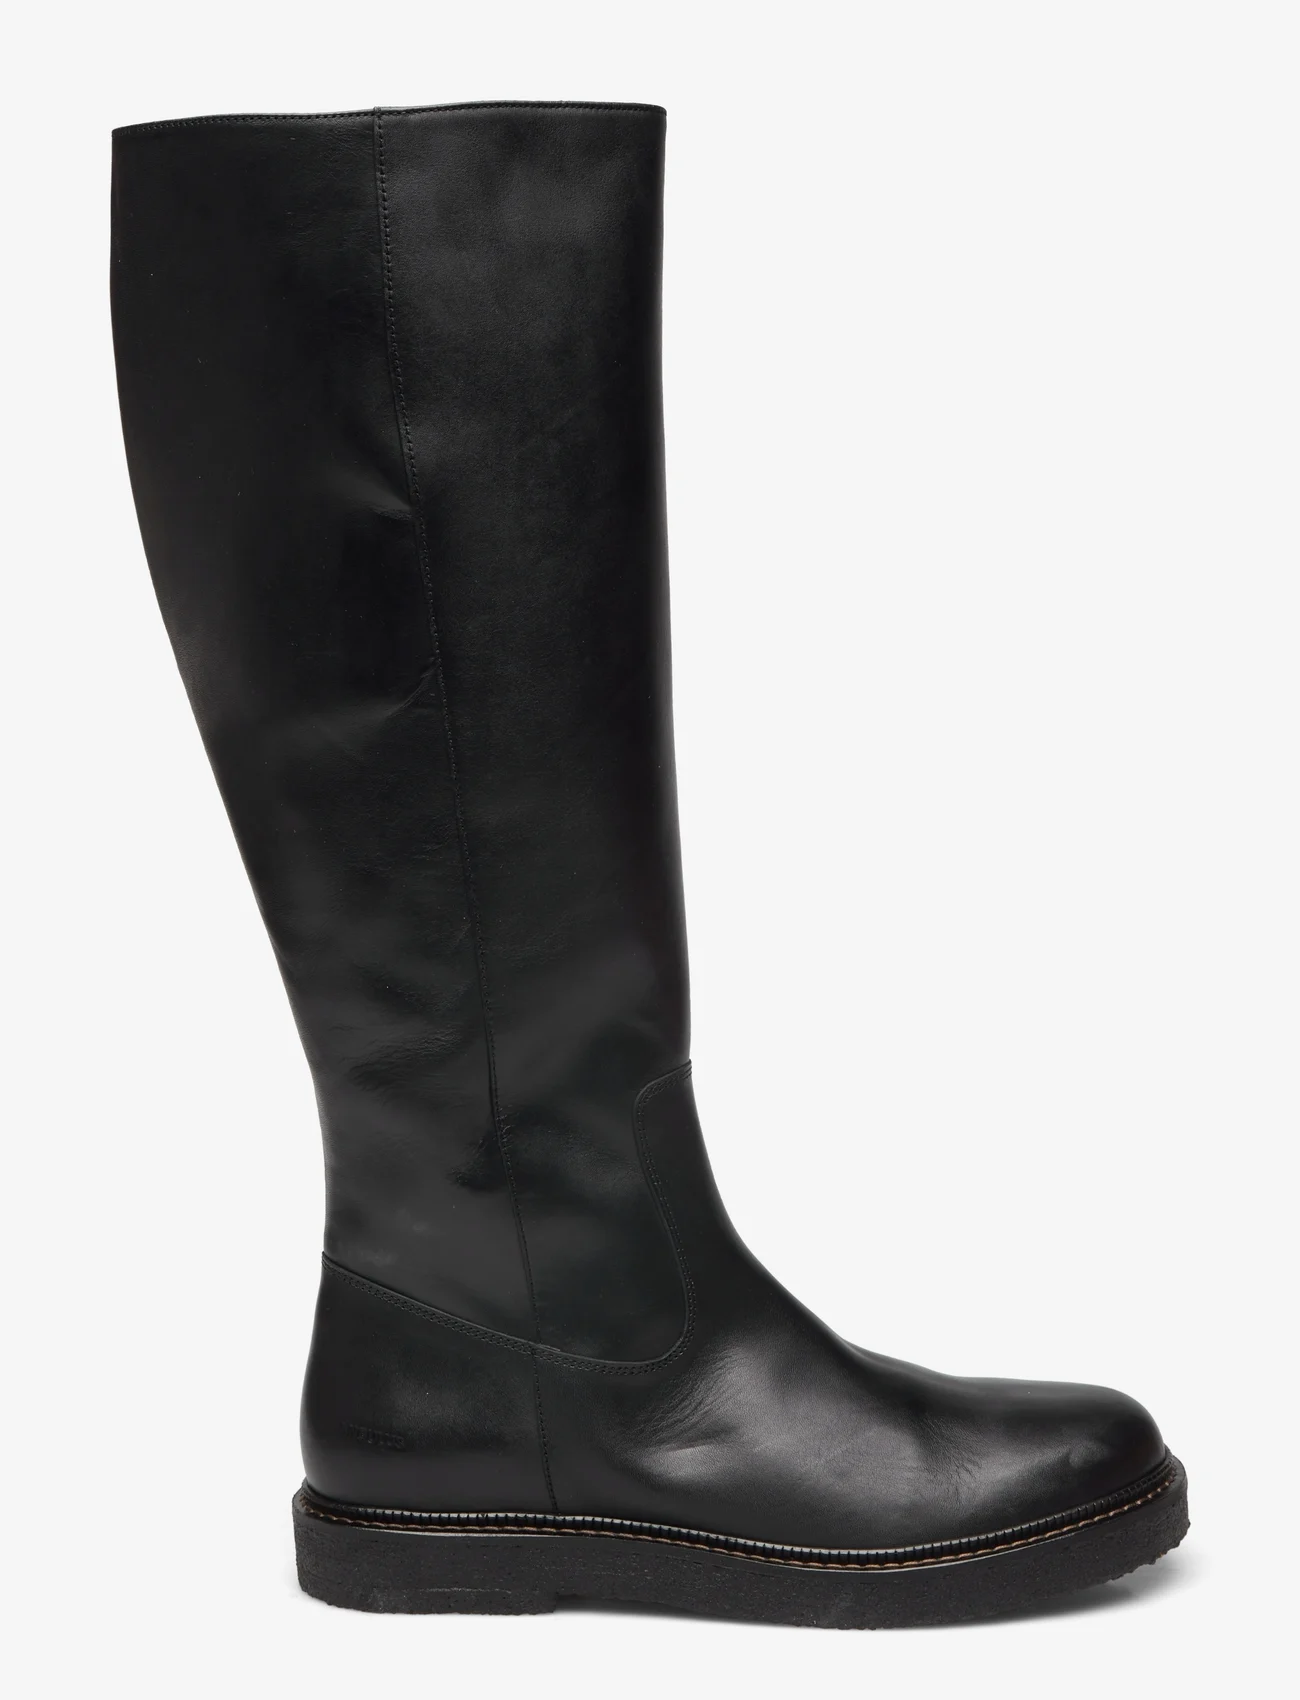 ANGULUS - Boots - flat - pitkävartiset saappaat - 1604/001 black/black - 1